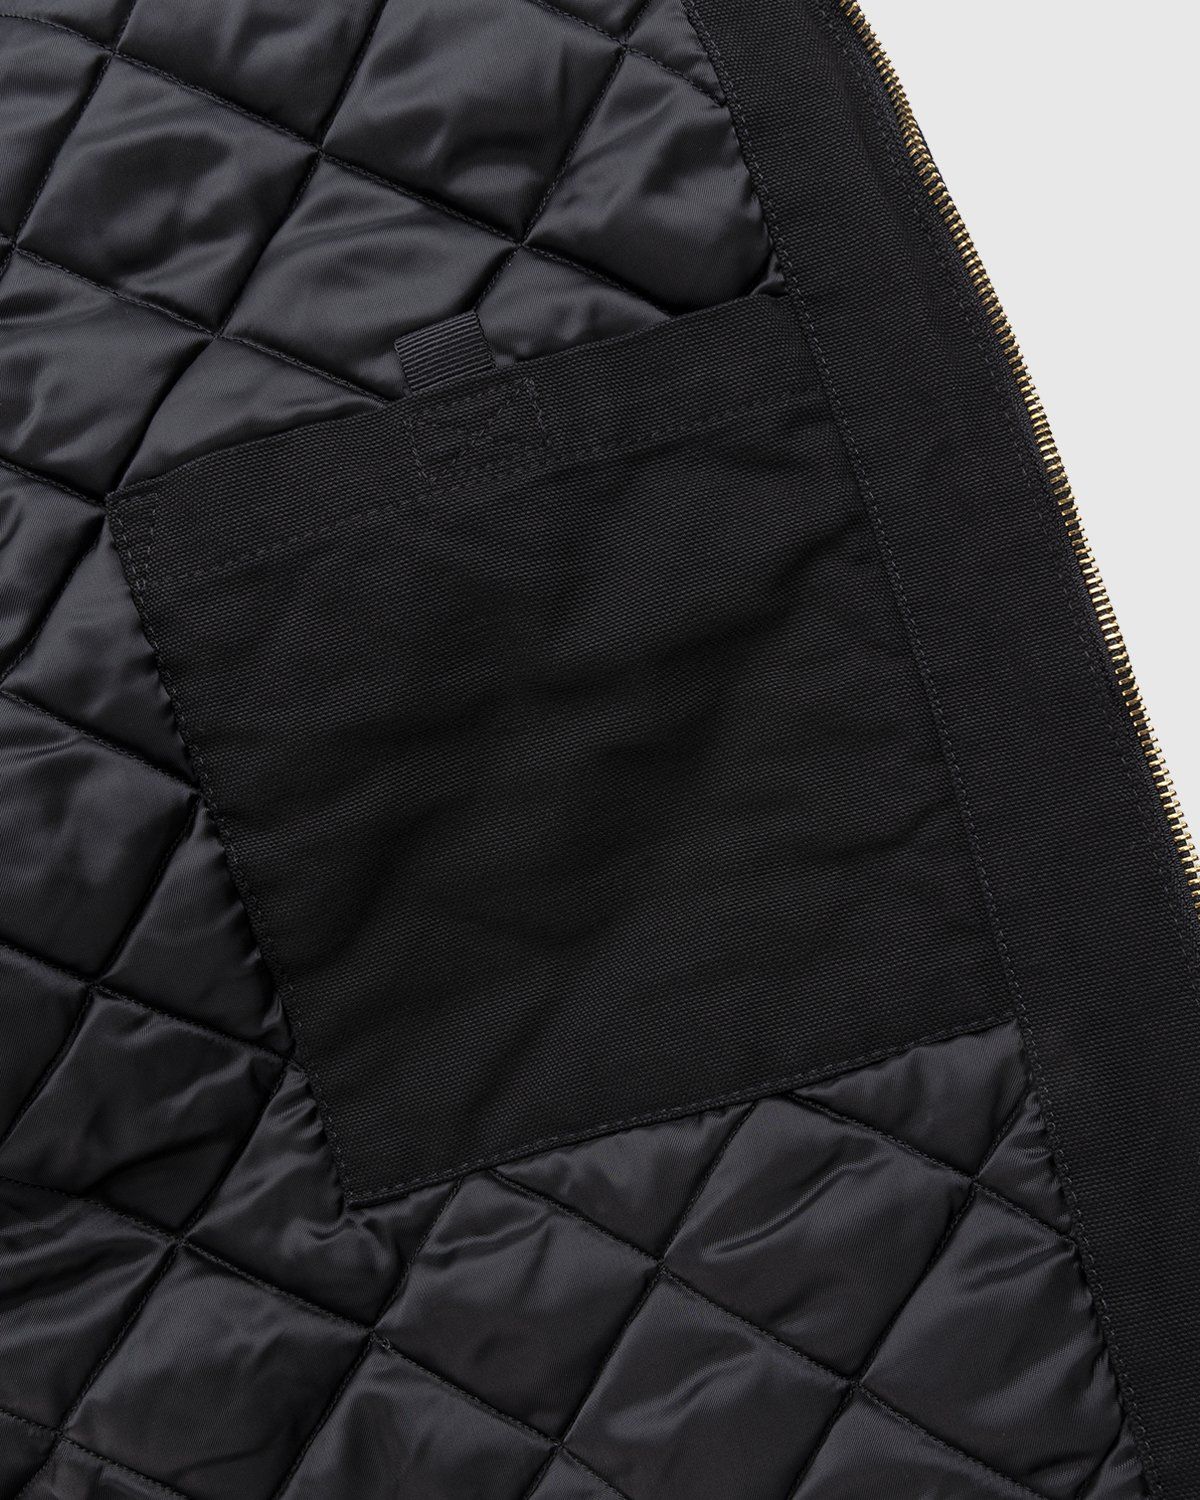 Carhartt WIP – OG Detroit Jacket Black - Jackets - Black - Image 6